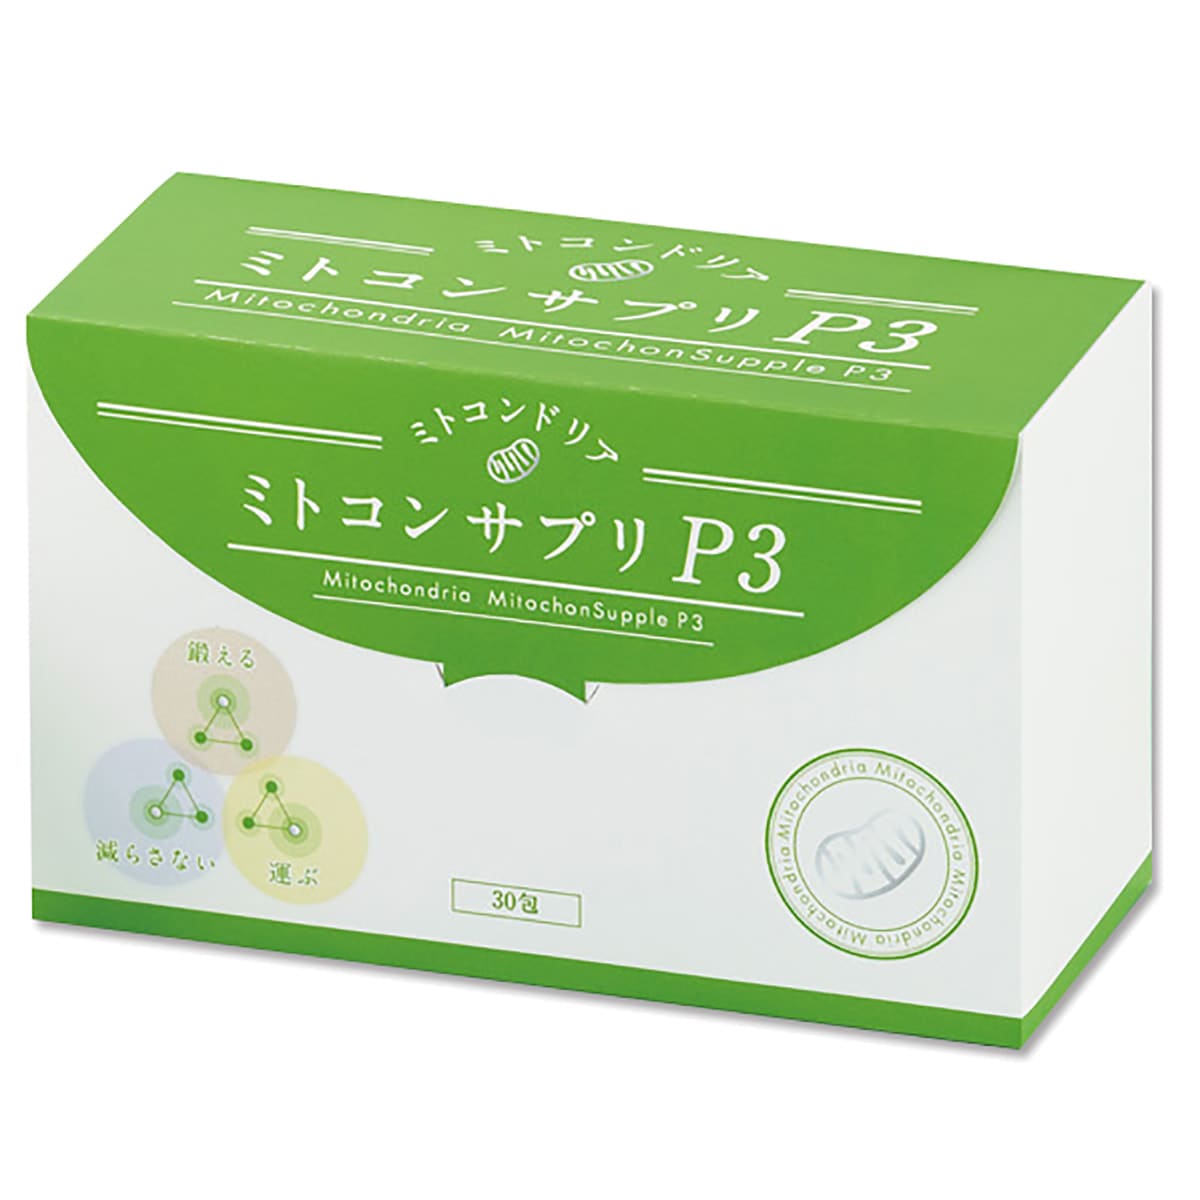 【ジャパンコスメ】ミトコンサプリP3 30包